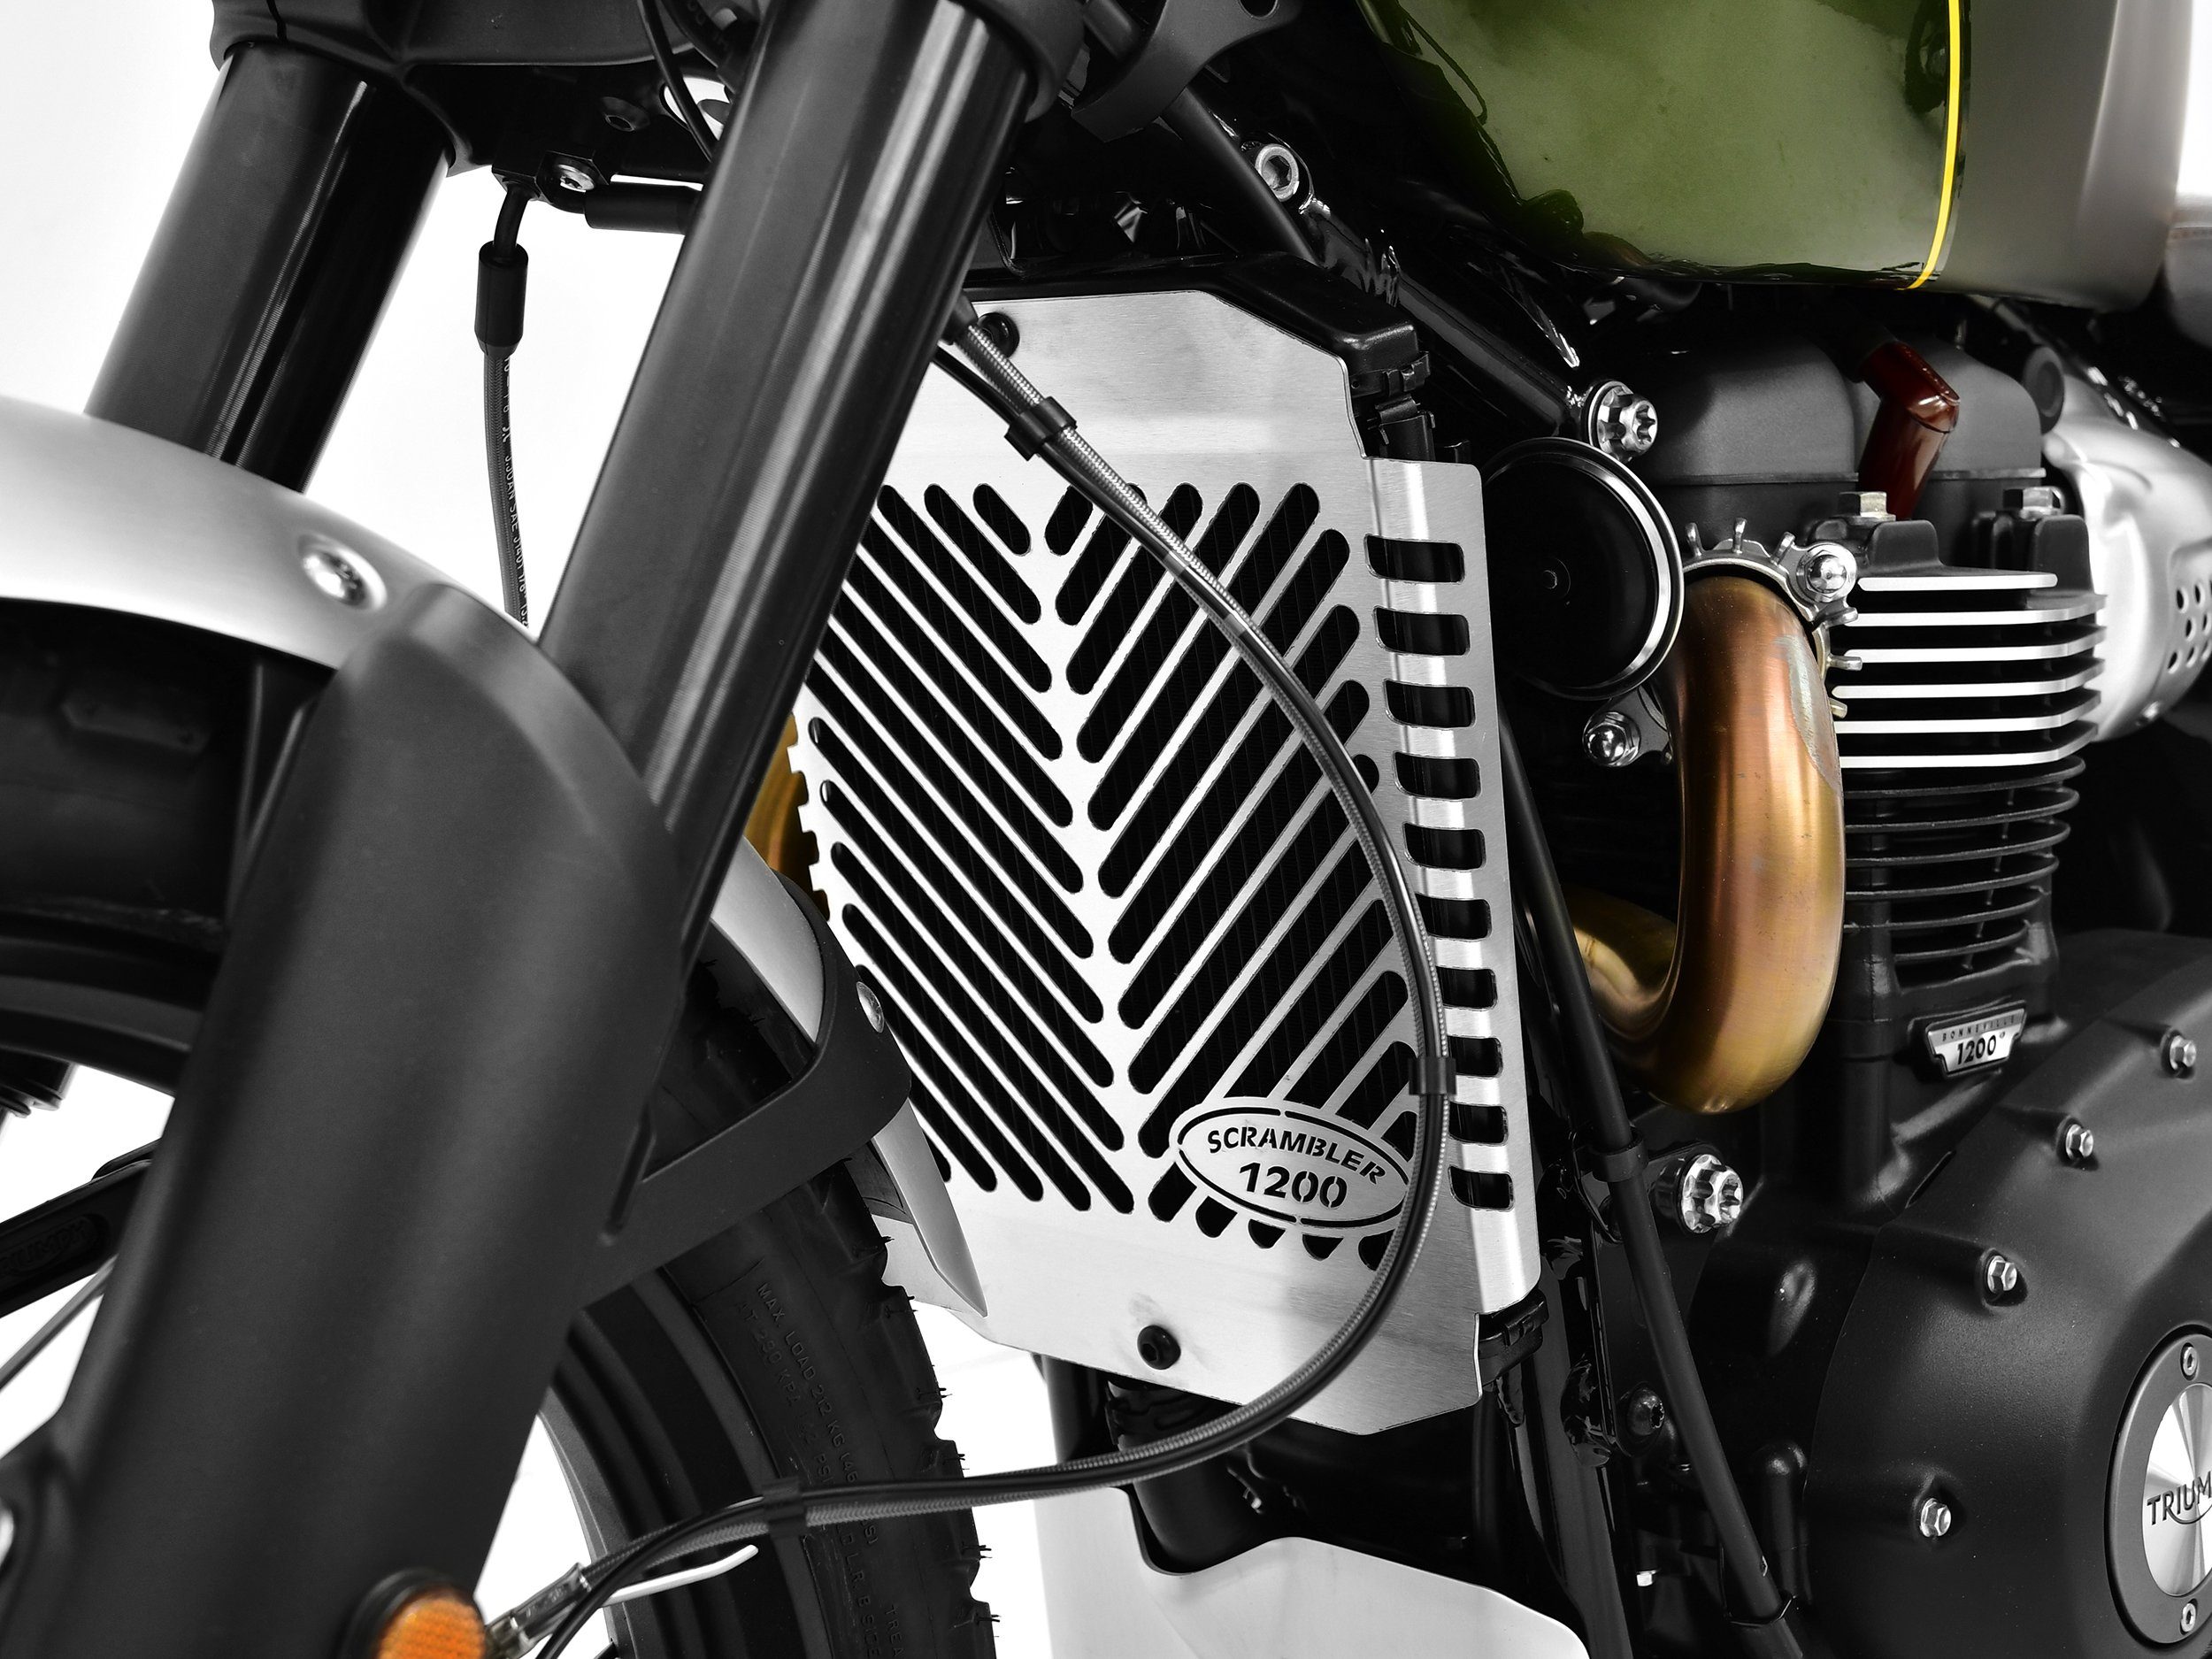 ZIEGER Motorrad-Additiv 1200 für Triumph Logo Motorradkühlerabdeckung XC Scrambler silber, Kühlerabdeckung